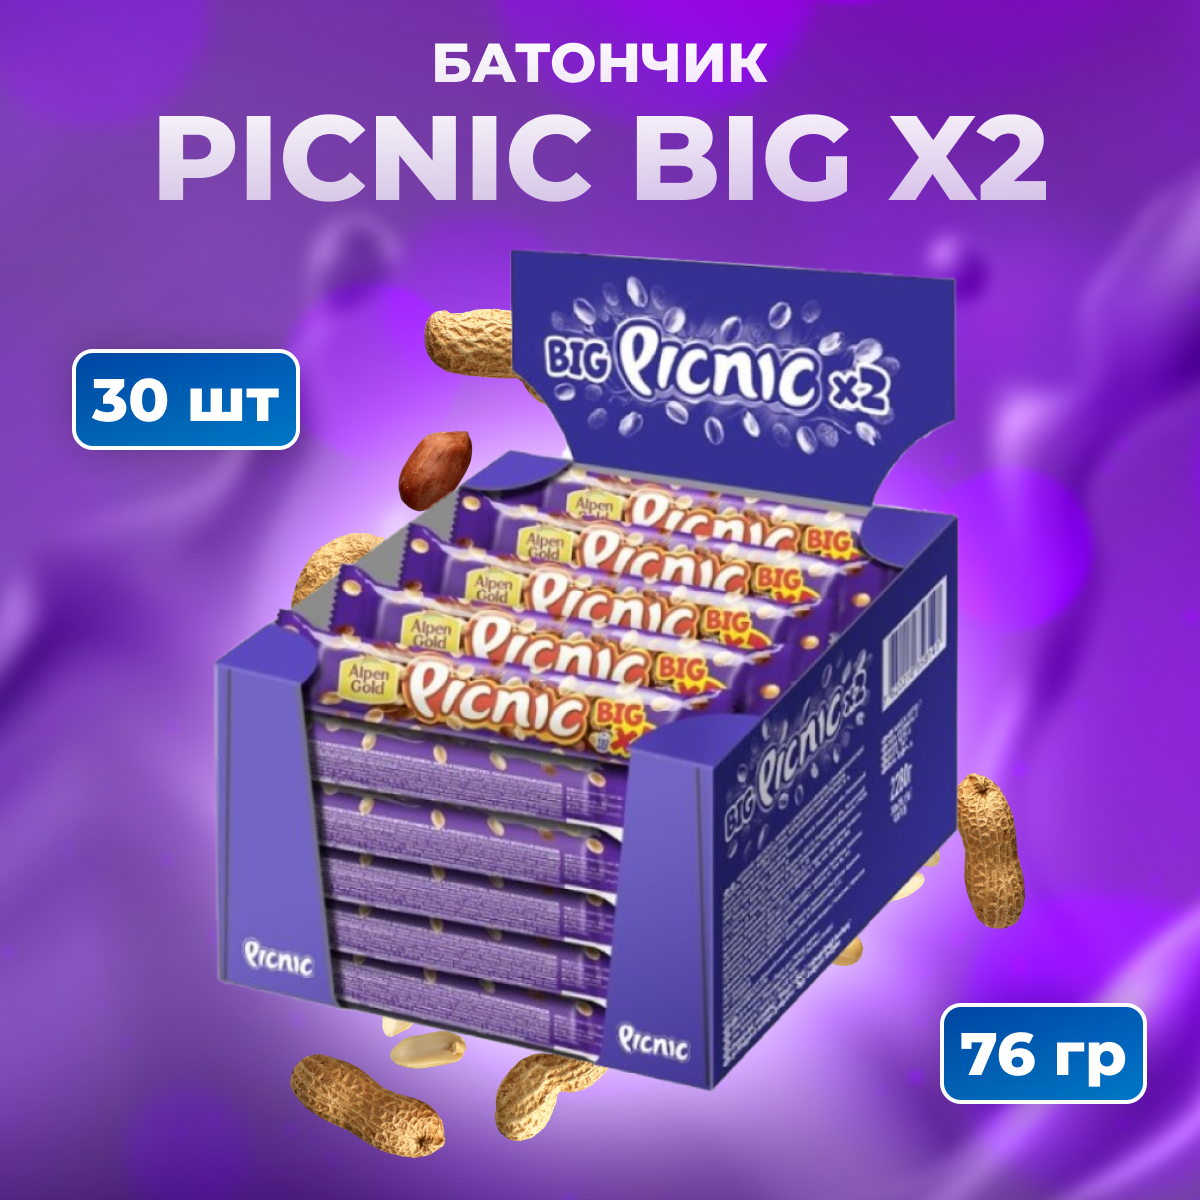 Picnic Big шоколадный батончик с изюмом и арахисом 30 шт по 76 г